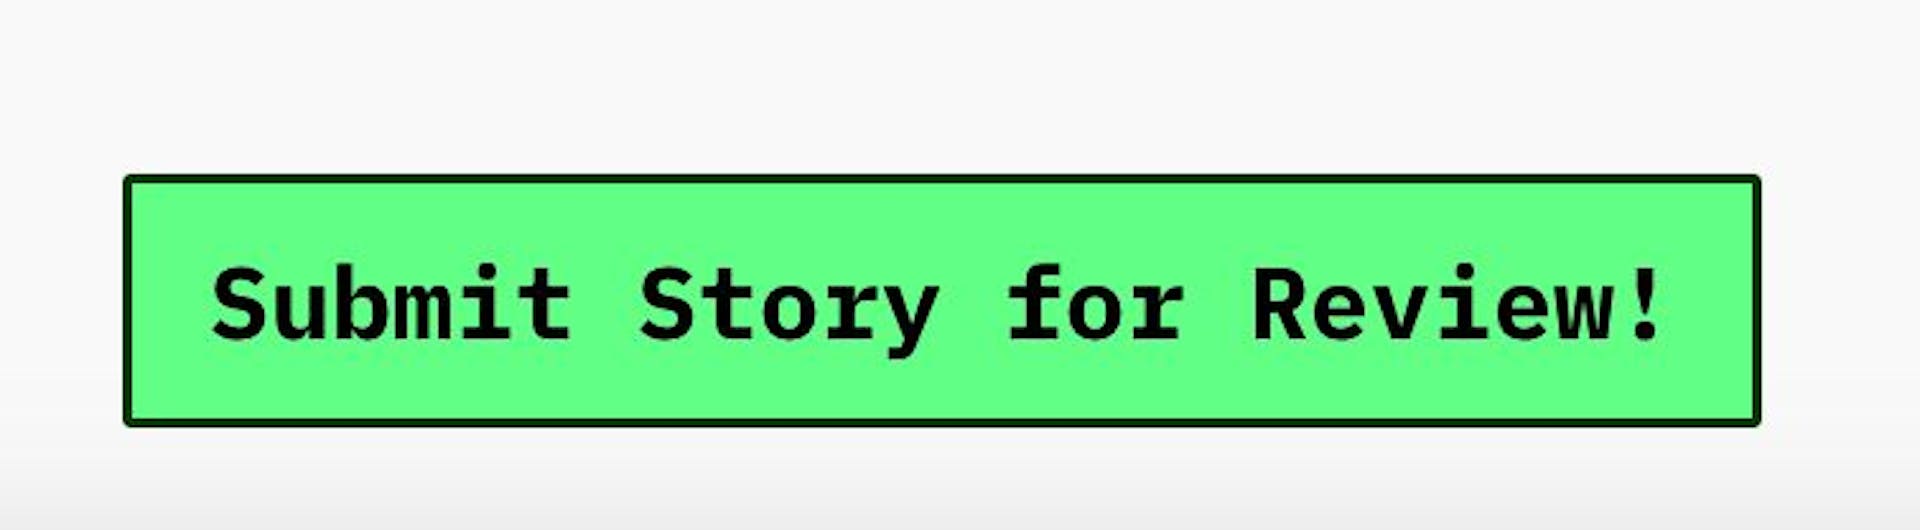 在任何故事的设置中单击此按钮，您可以将草稿提交给人工编辑进行审阅。